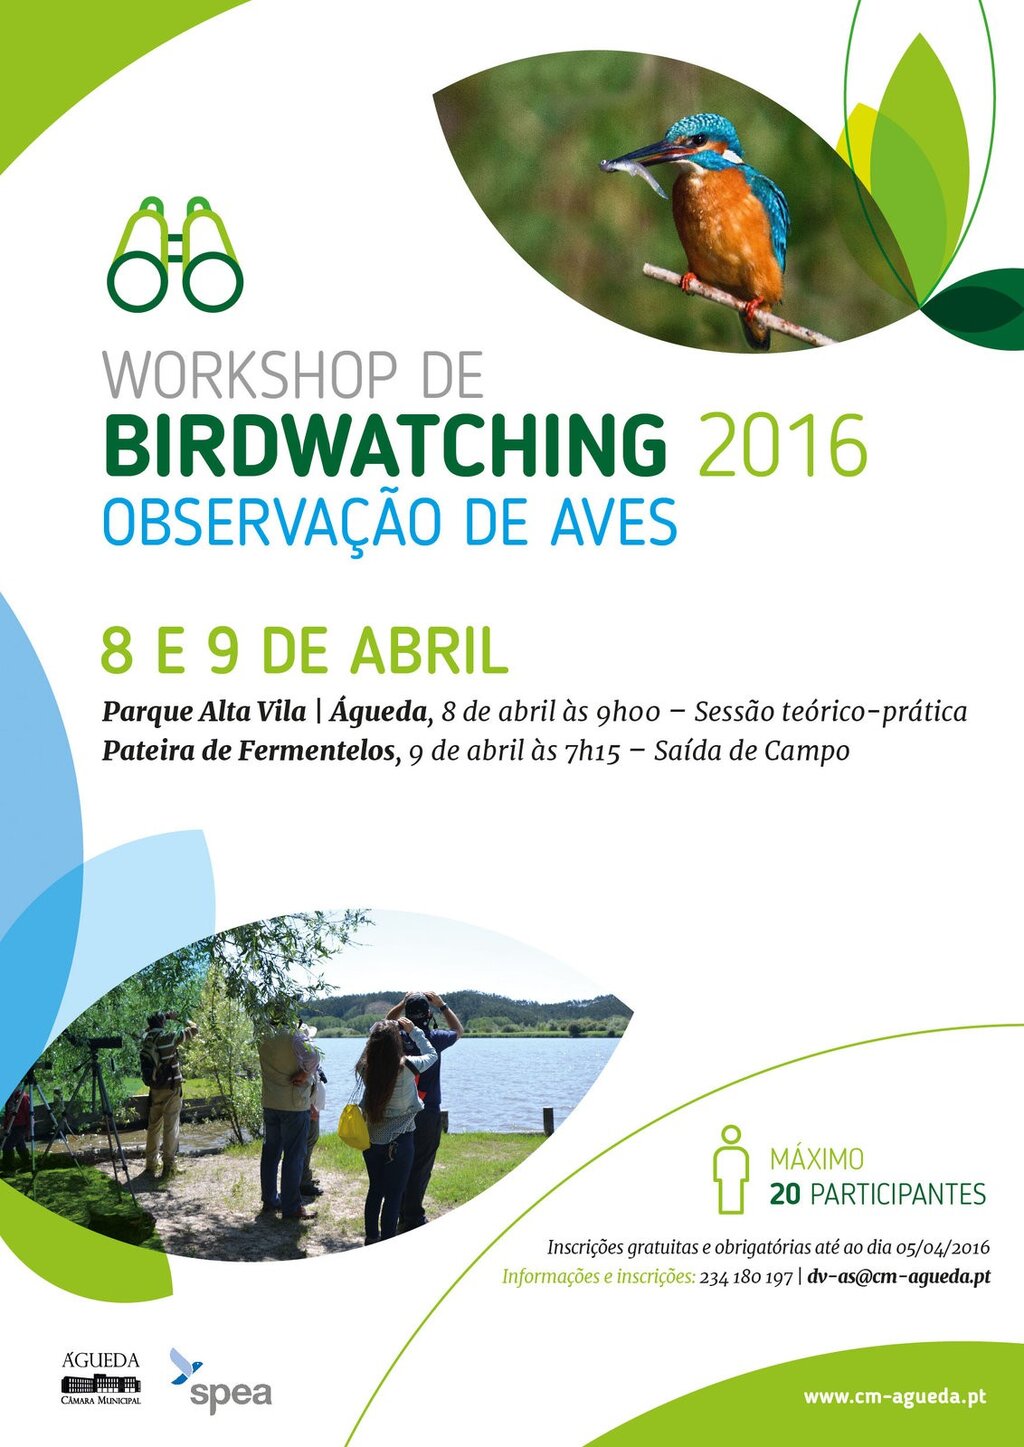 Águeda promove o Birdwatching através realização de workshop de observação de aves